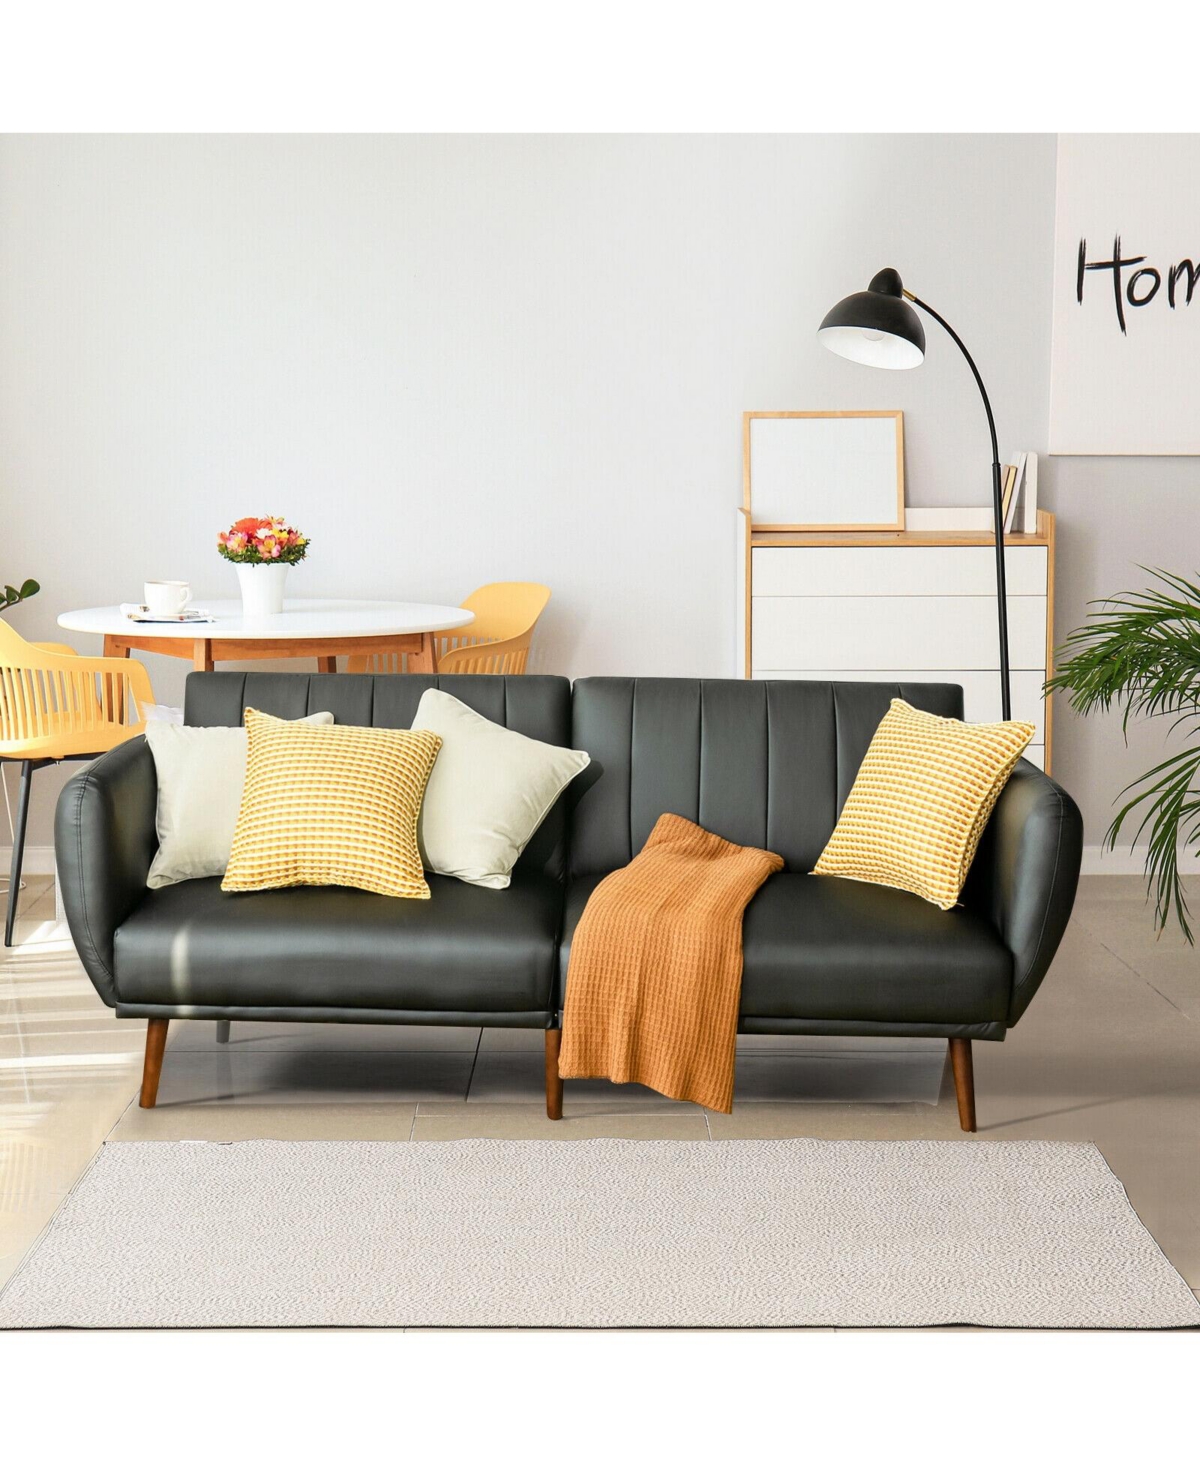 Shop Slickblue 3 Seat Convertible Sofa Bed With Adjustable Backrest For Living Room-black